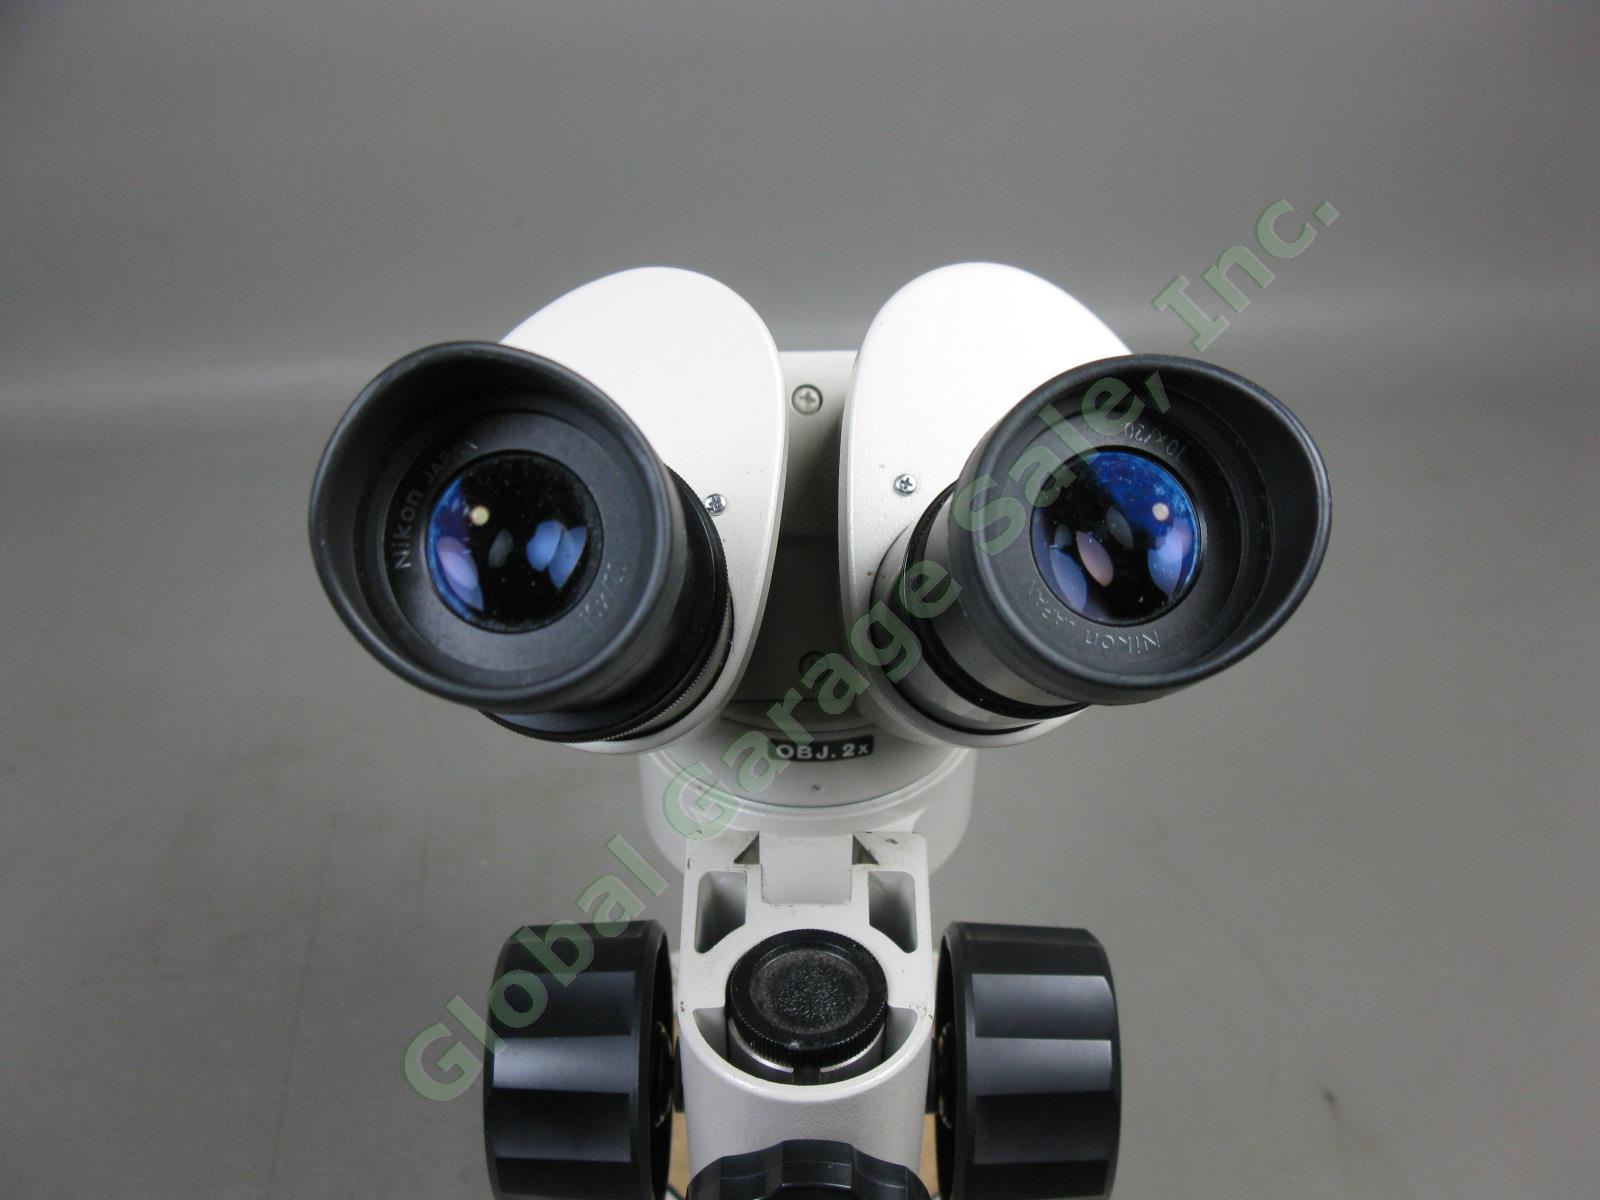 Nikon OBJ.2x Binocular Microscope W/ 10x/20 Eyepieces Stand #217542 No Reserve! 4